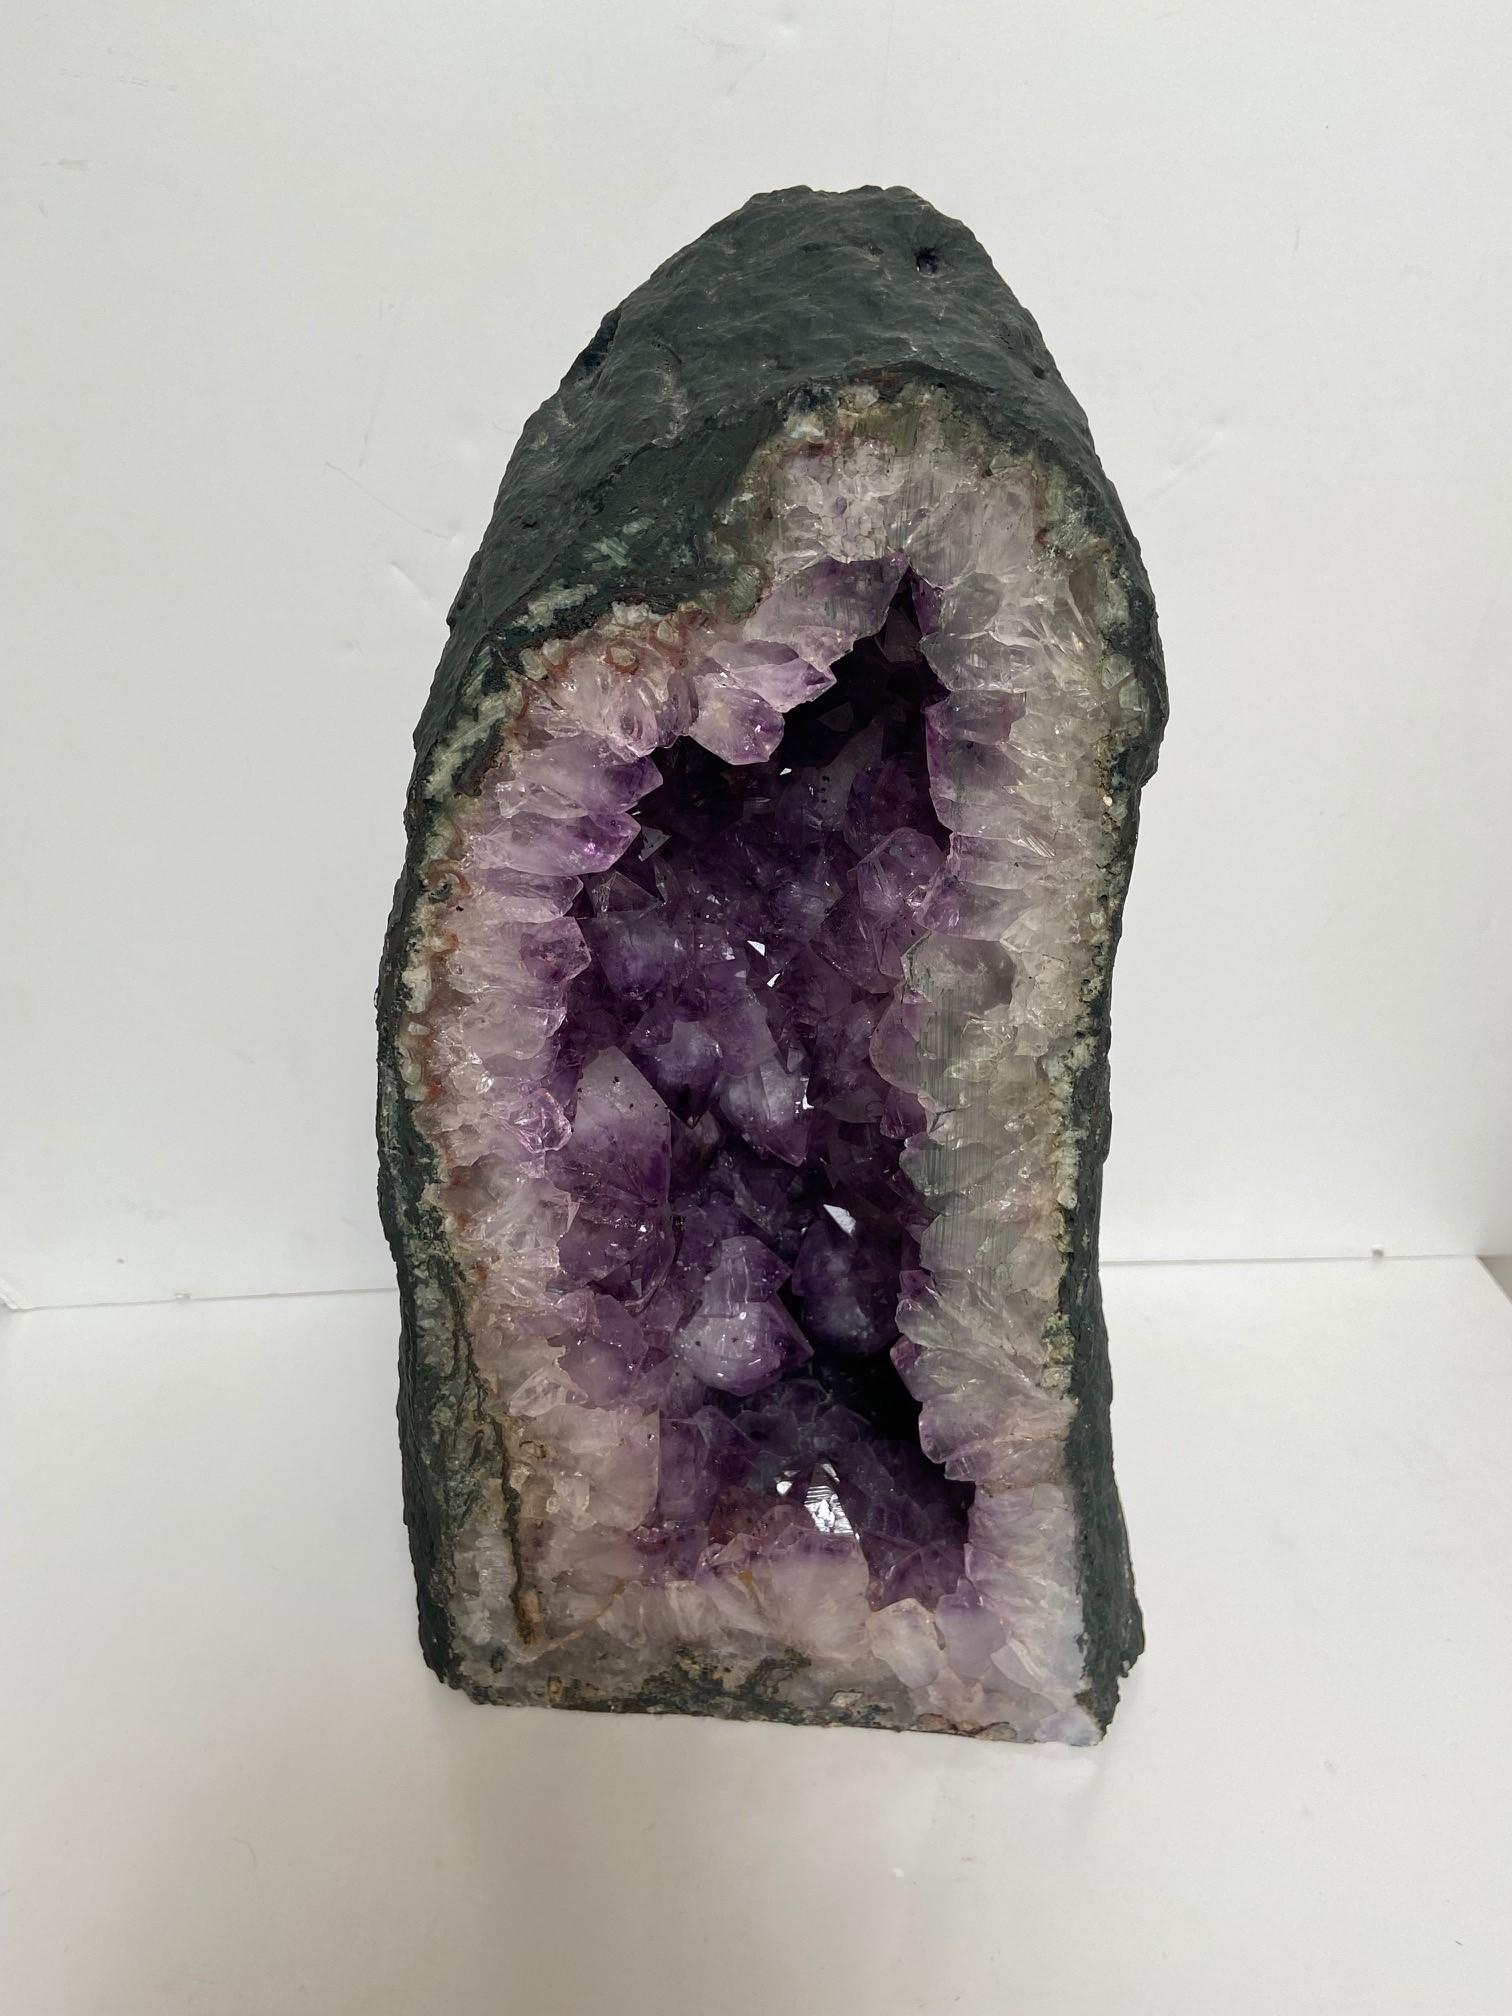 Amethystkristall Höhle eine auffallende geschliffene und polierte Amethystquarzgeode hohe bergige Form, der einzelne polierte Schliff zeigt tief violetten Amethystkristall.